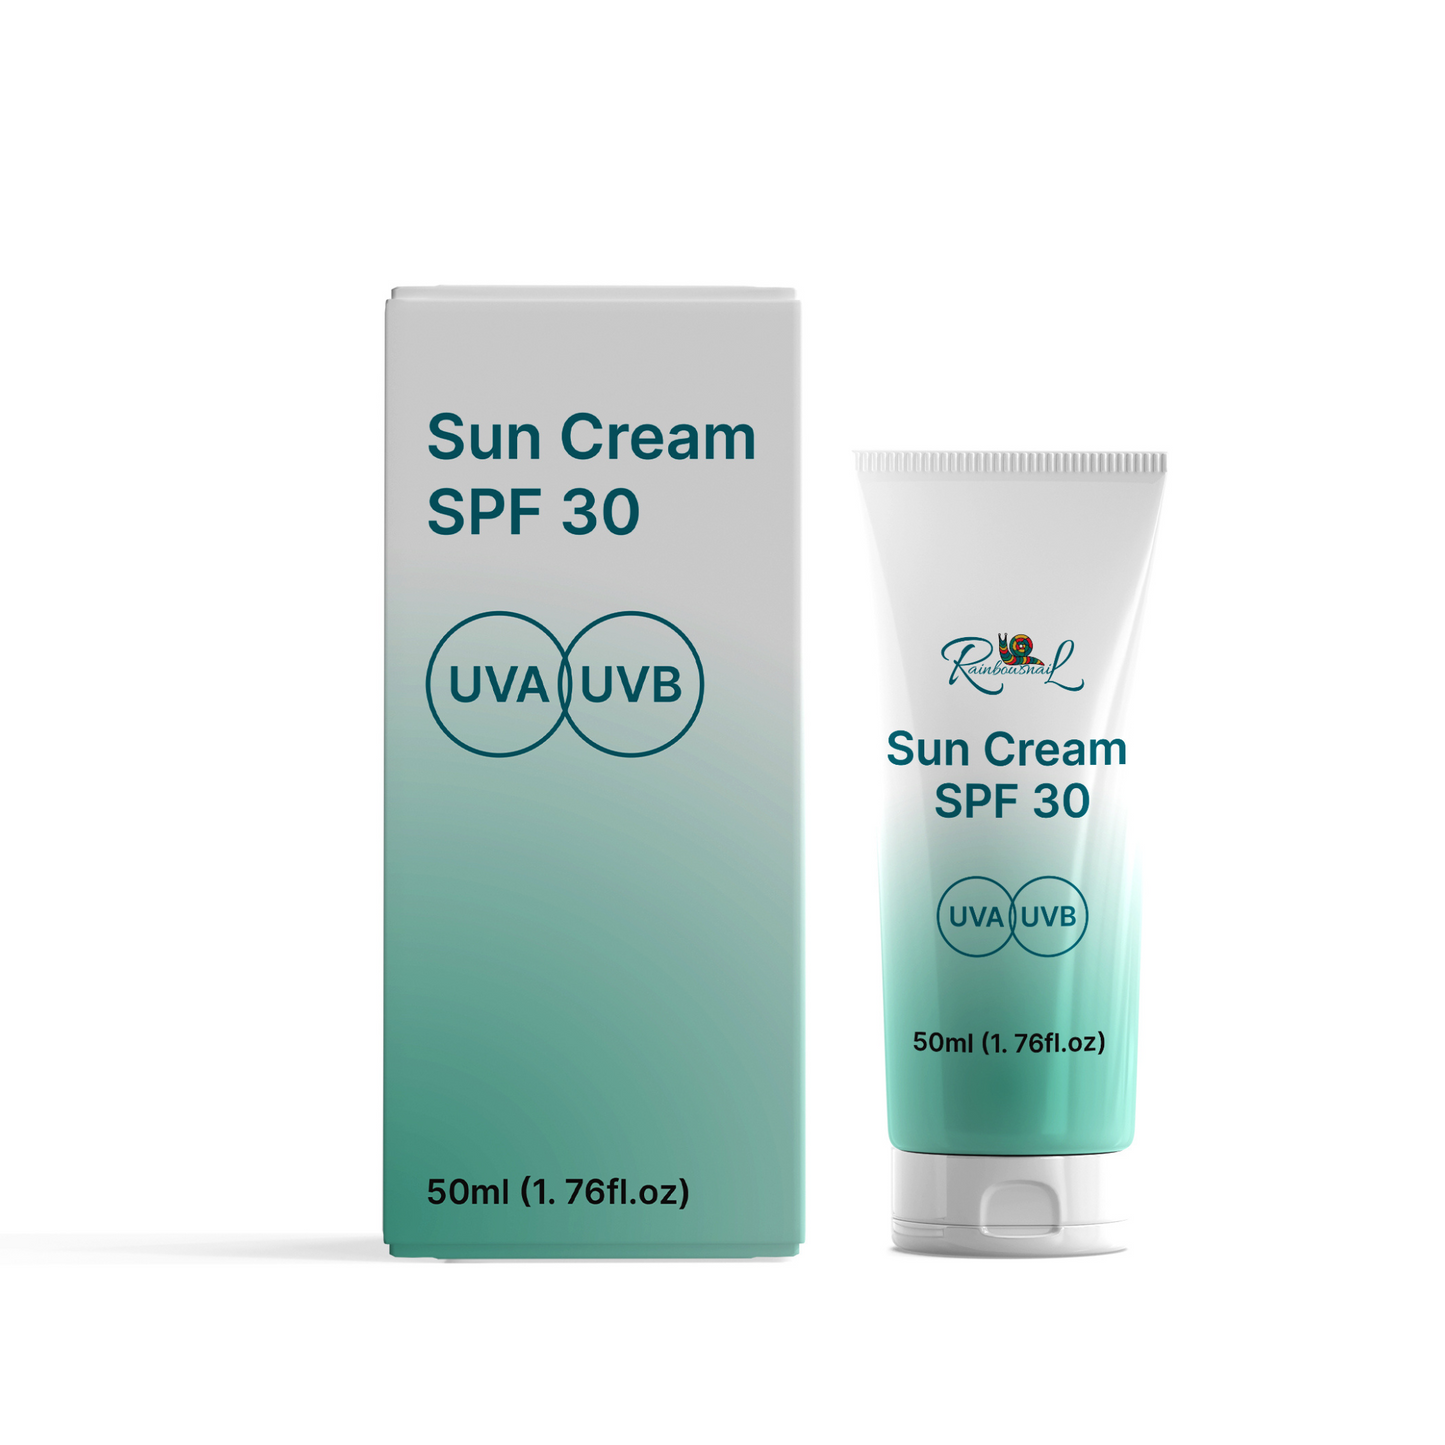 Sun Cream - SPF 30